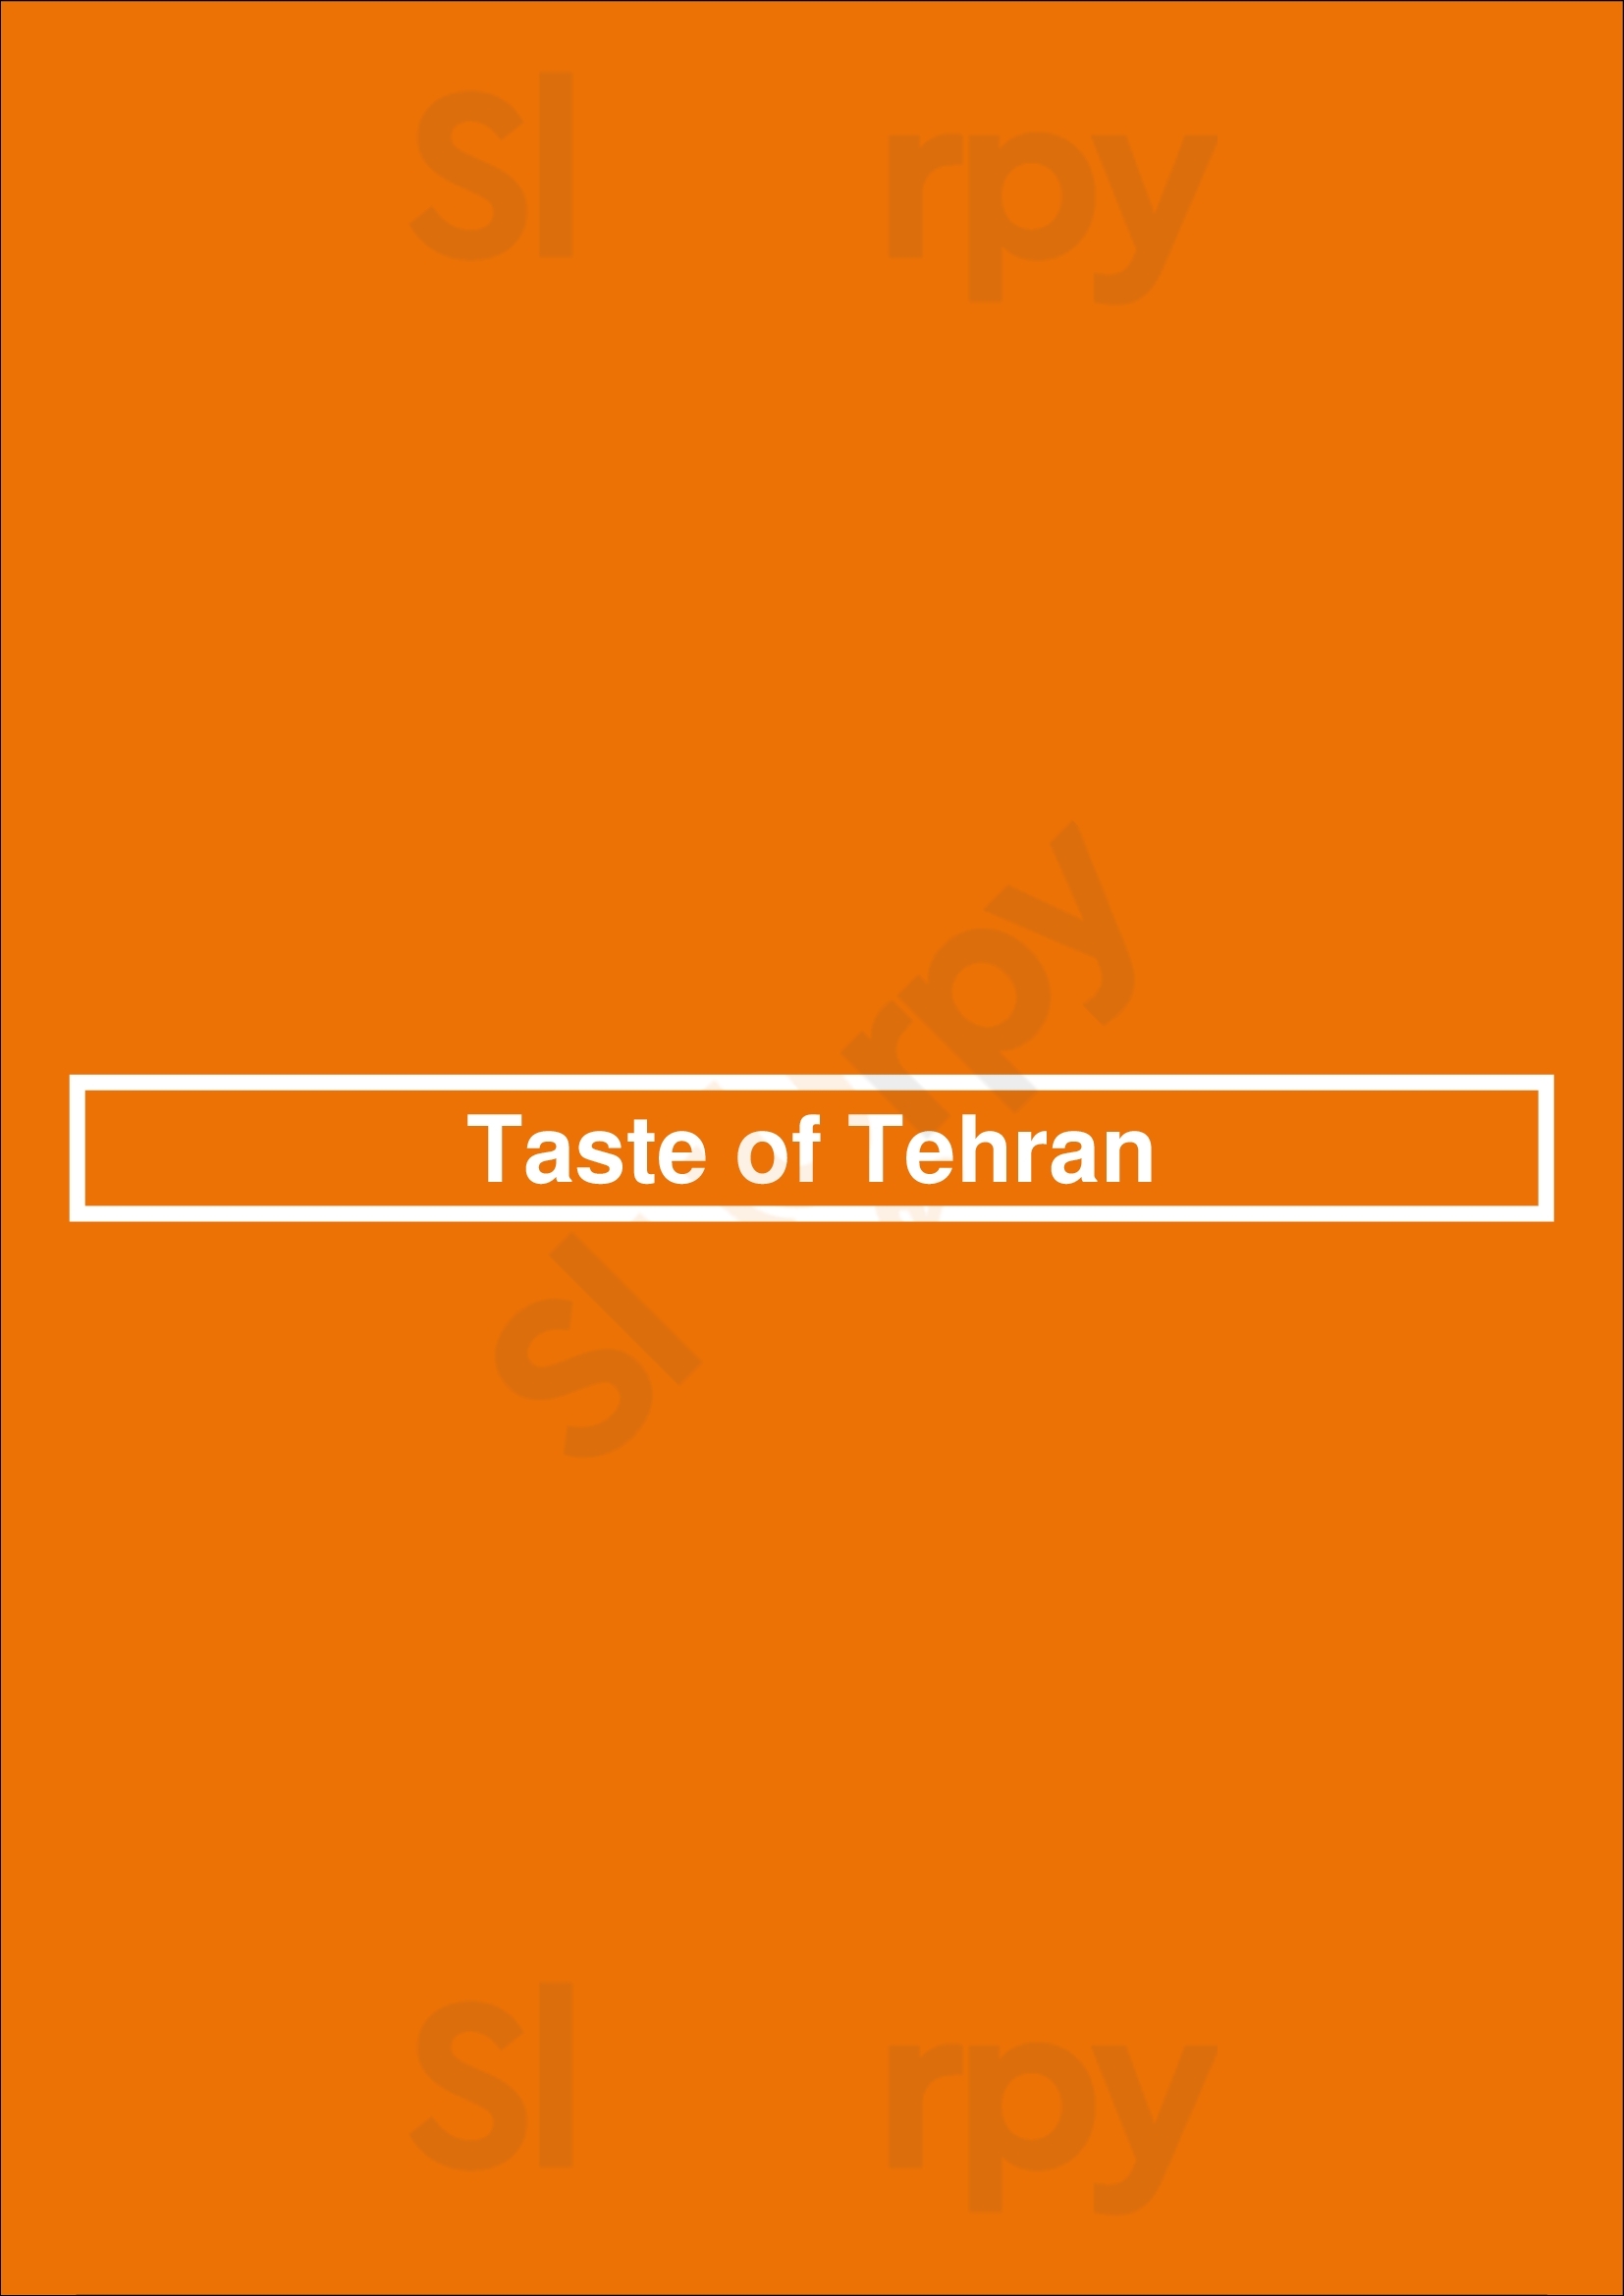 Taste Of Tehran Los Angeles Menu - 1